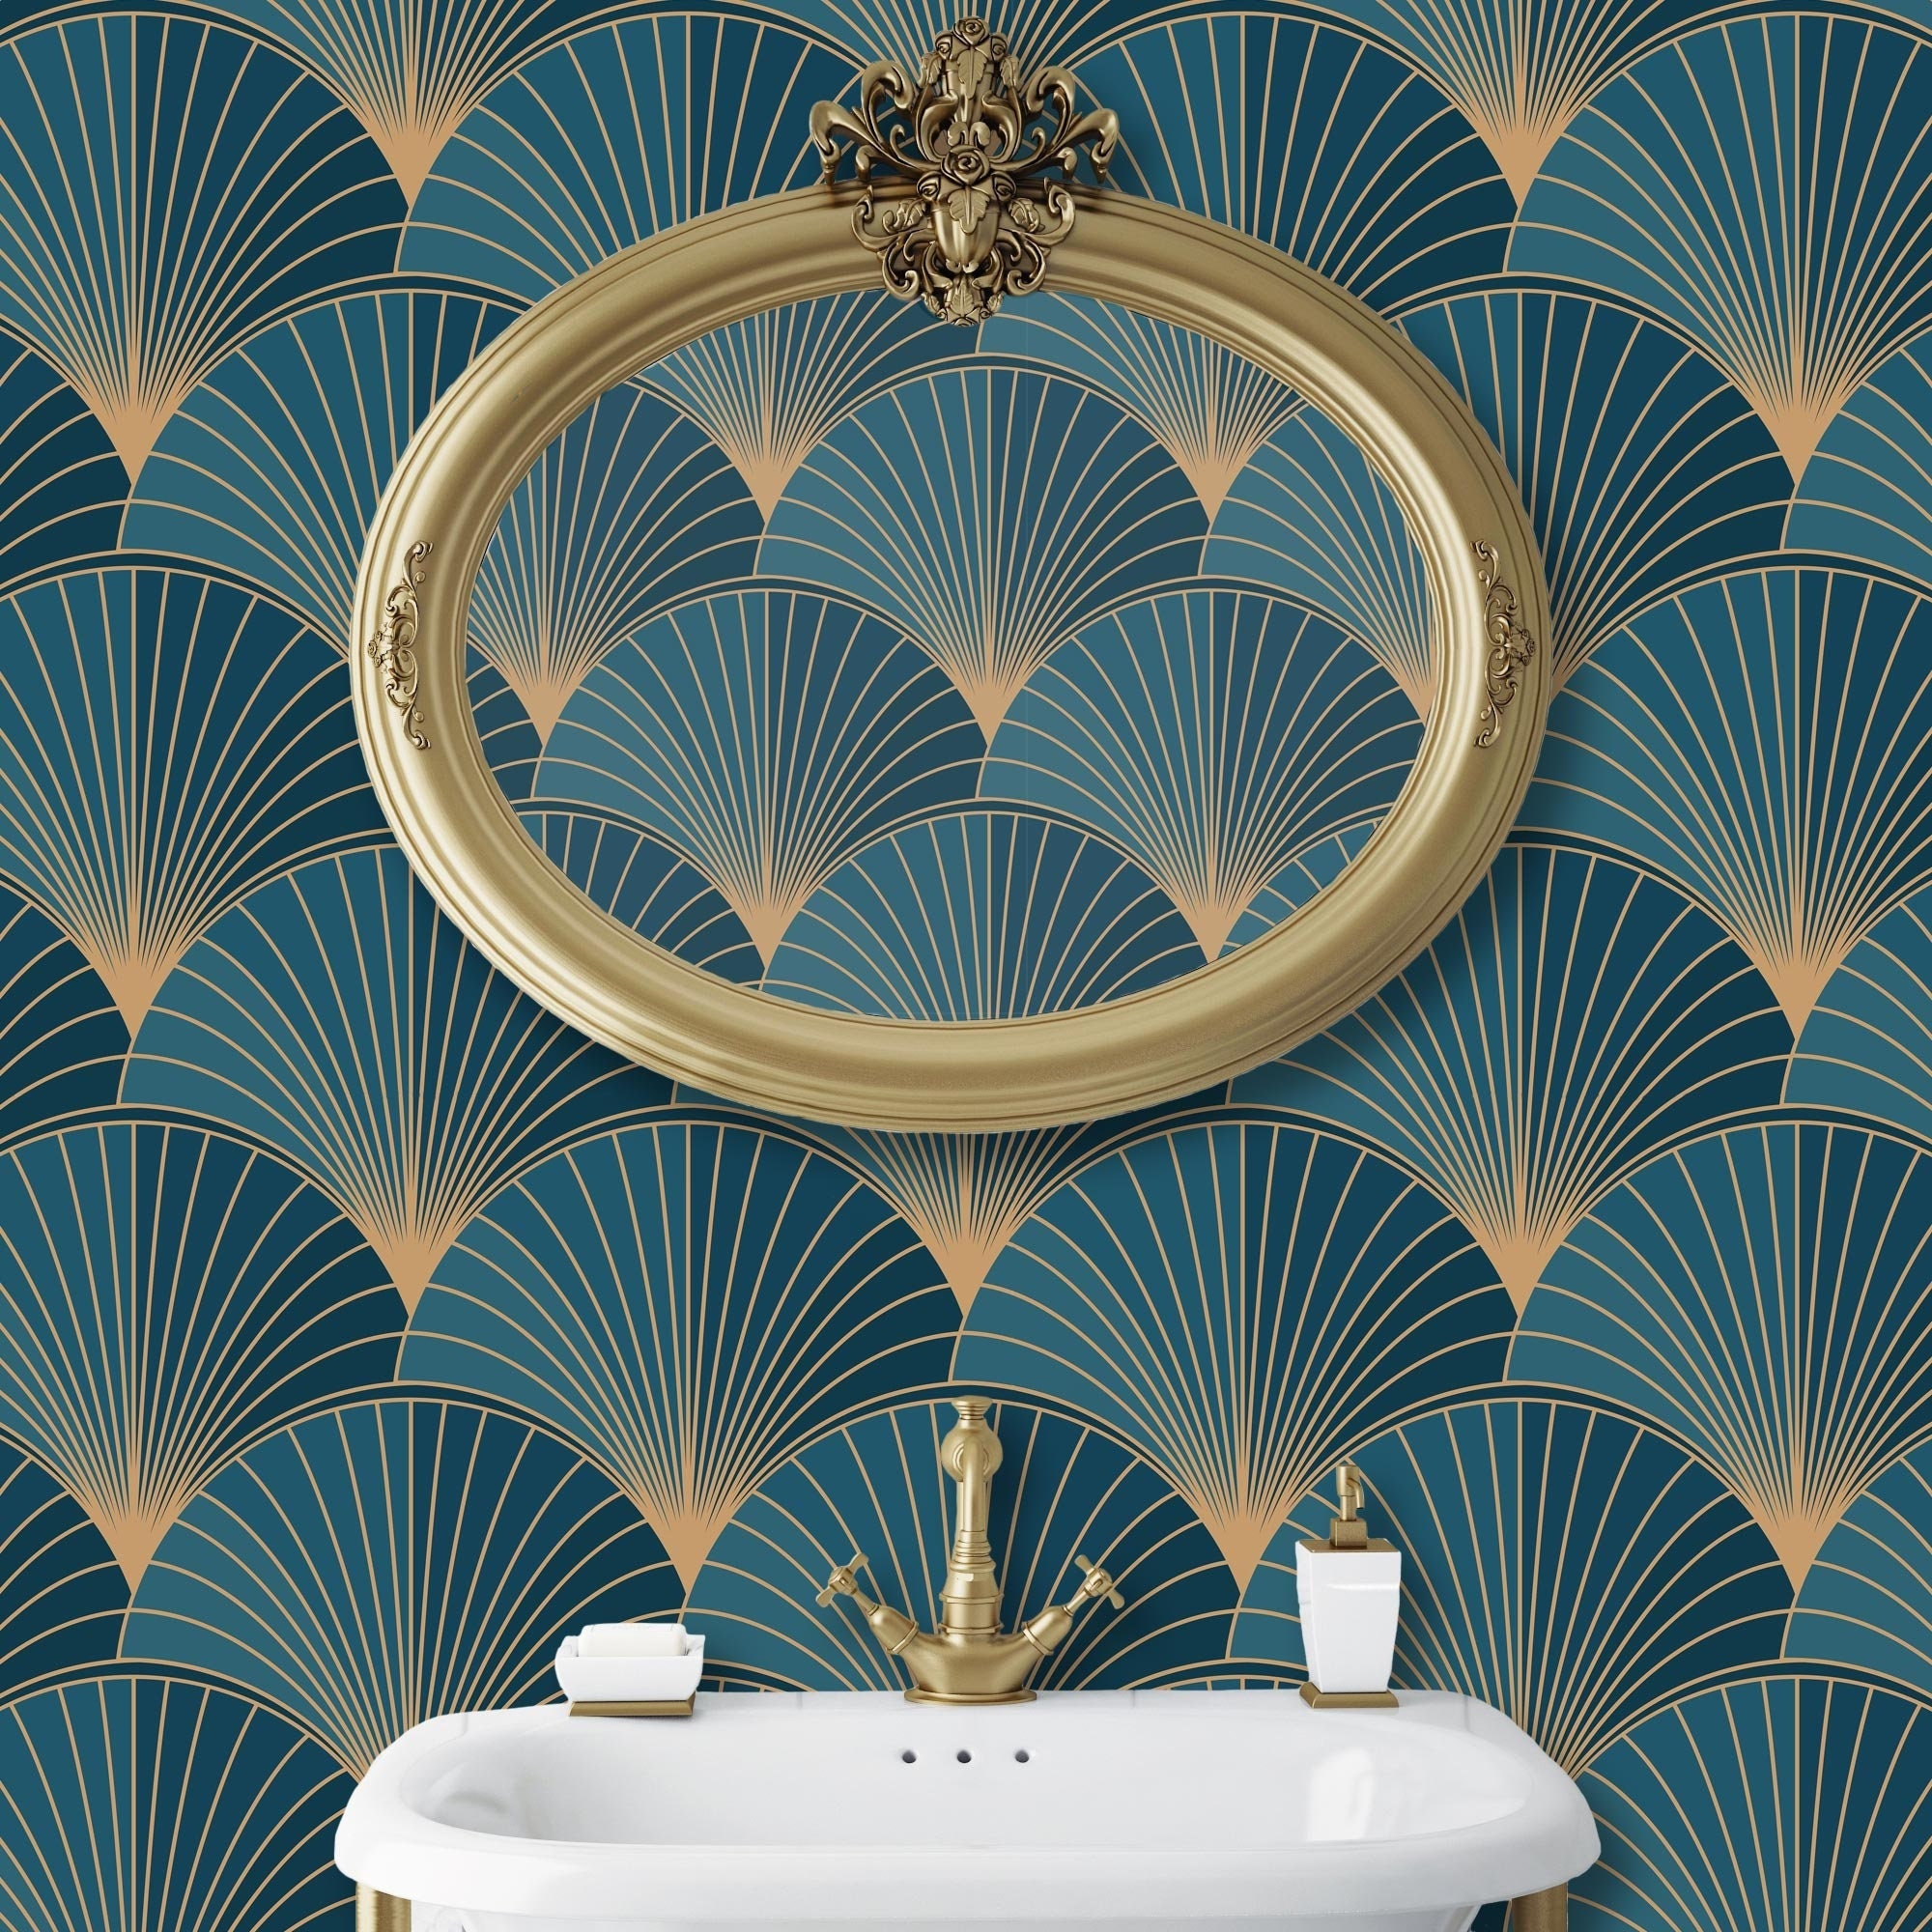 100 Art Deco Iphone Background s  Wallpaperscom